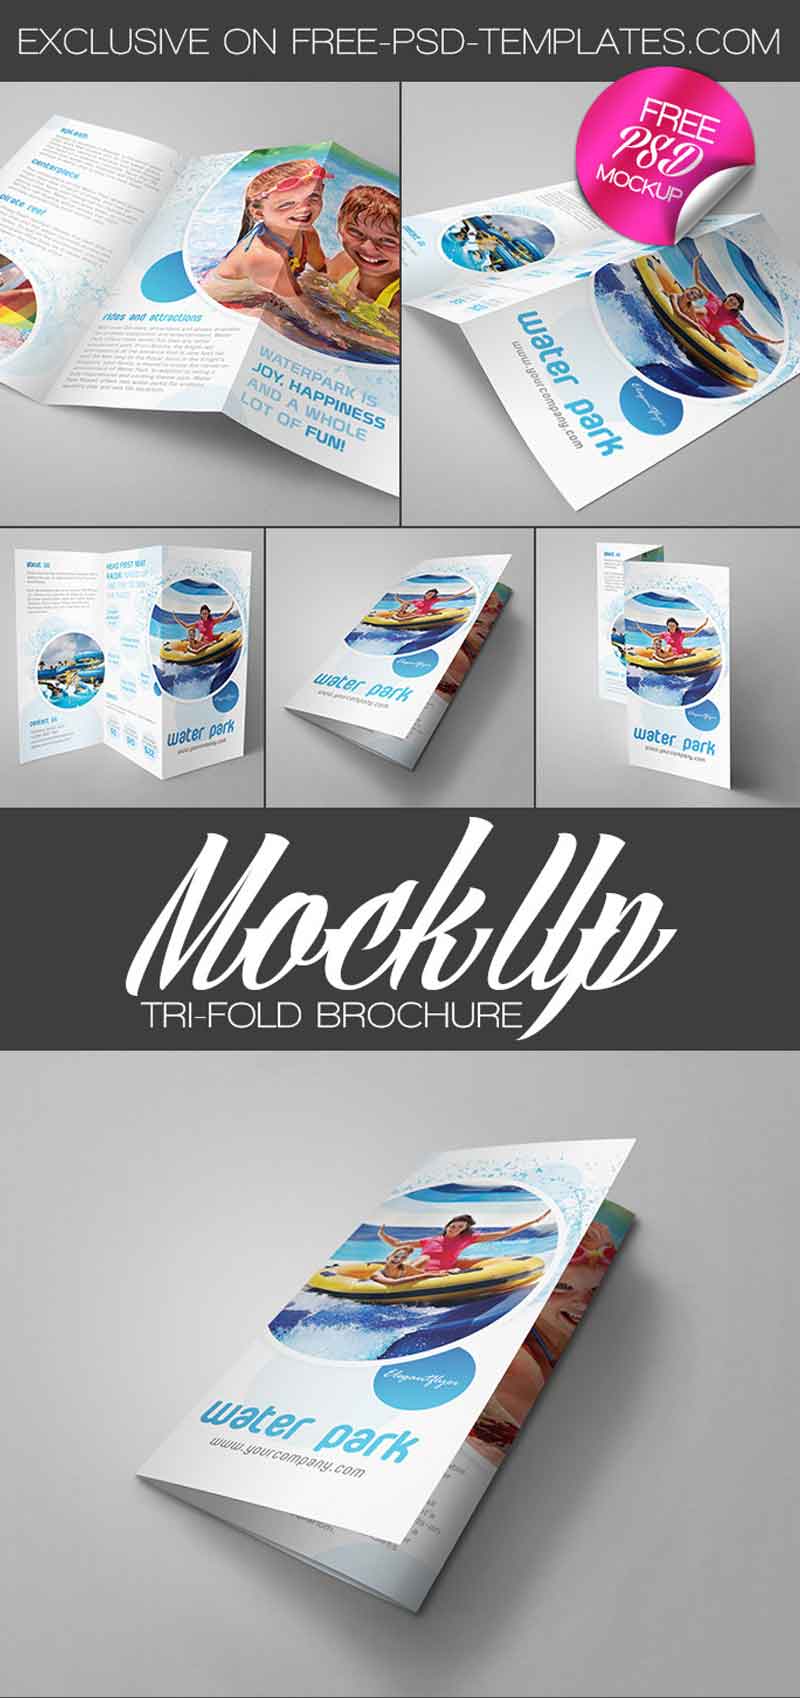 Free-Tri-fold-Brochure-MockUps